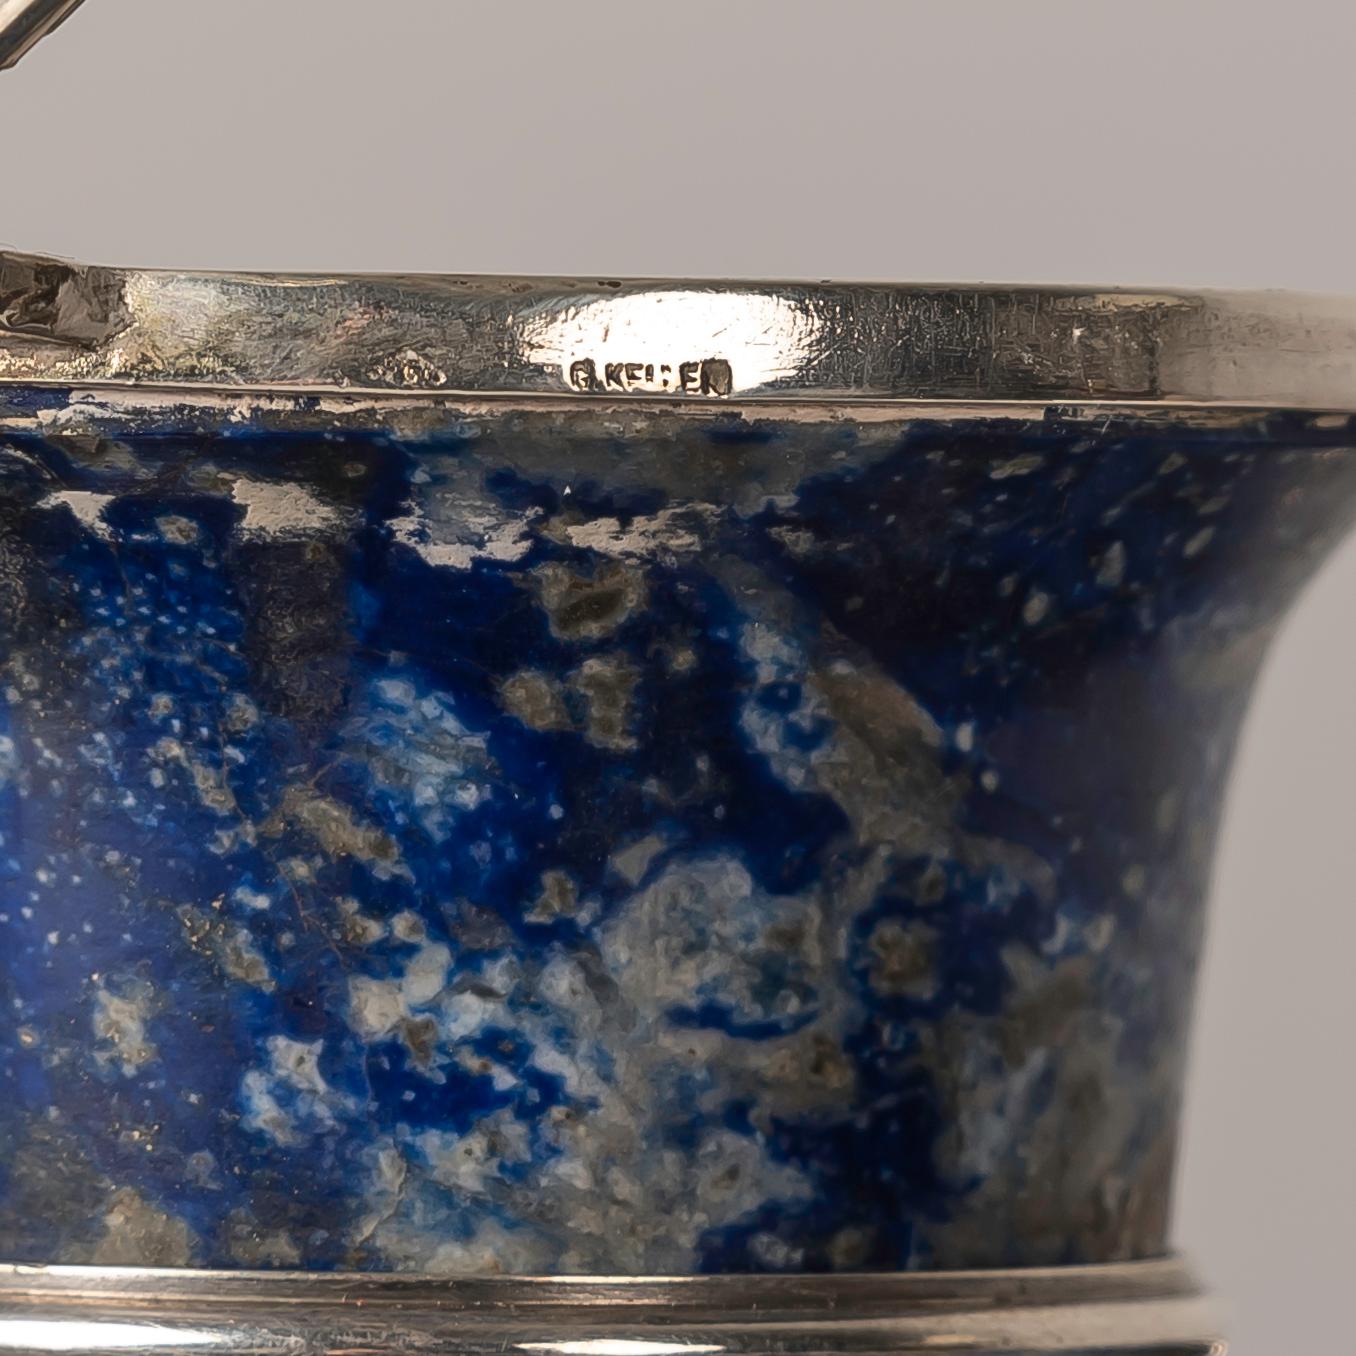 Cet encrier français en lapis-lazuli et argent, fabriqué par Gustave Keller dans les années 1920, est une pièce exceptionnelle d'artisanat artistique et fonctionnel, qui rayonne d'une allure intemporelle et d'une signification historique.

Cet